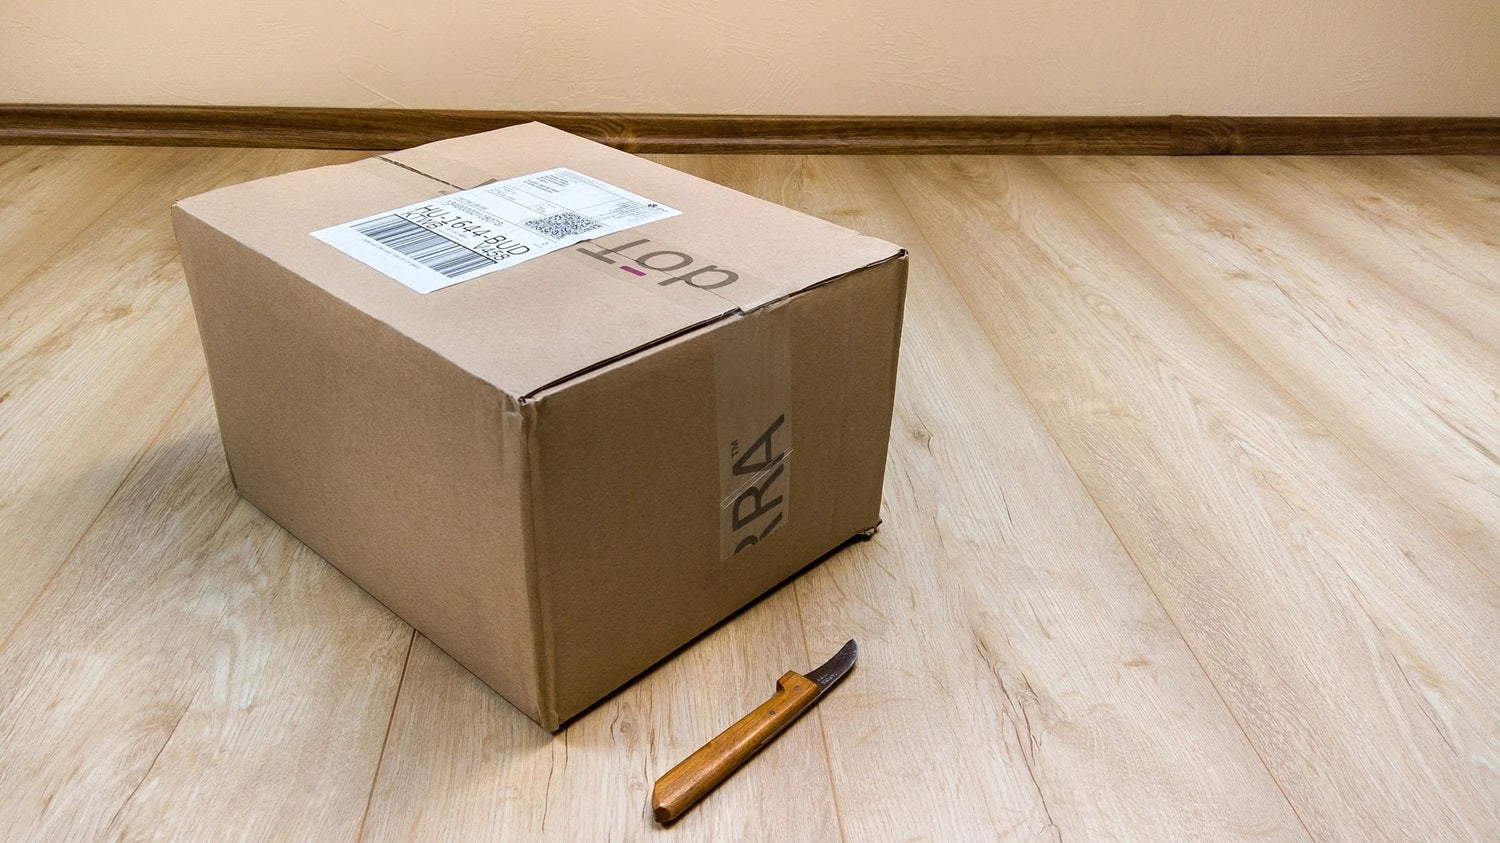 Blick auf ein gepacktes Paket, das neben einem Cutter auf einem Holzboden steht.